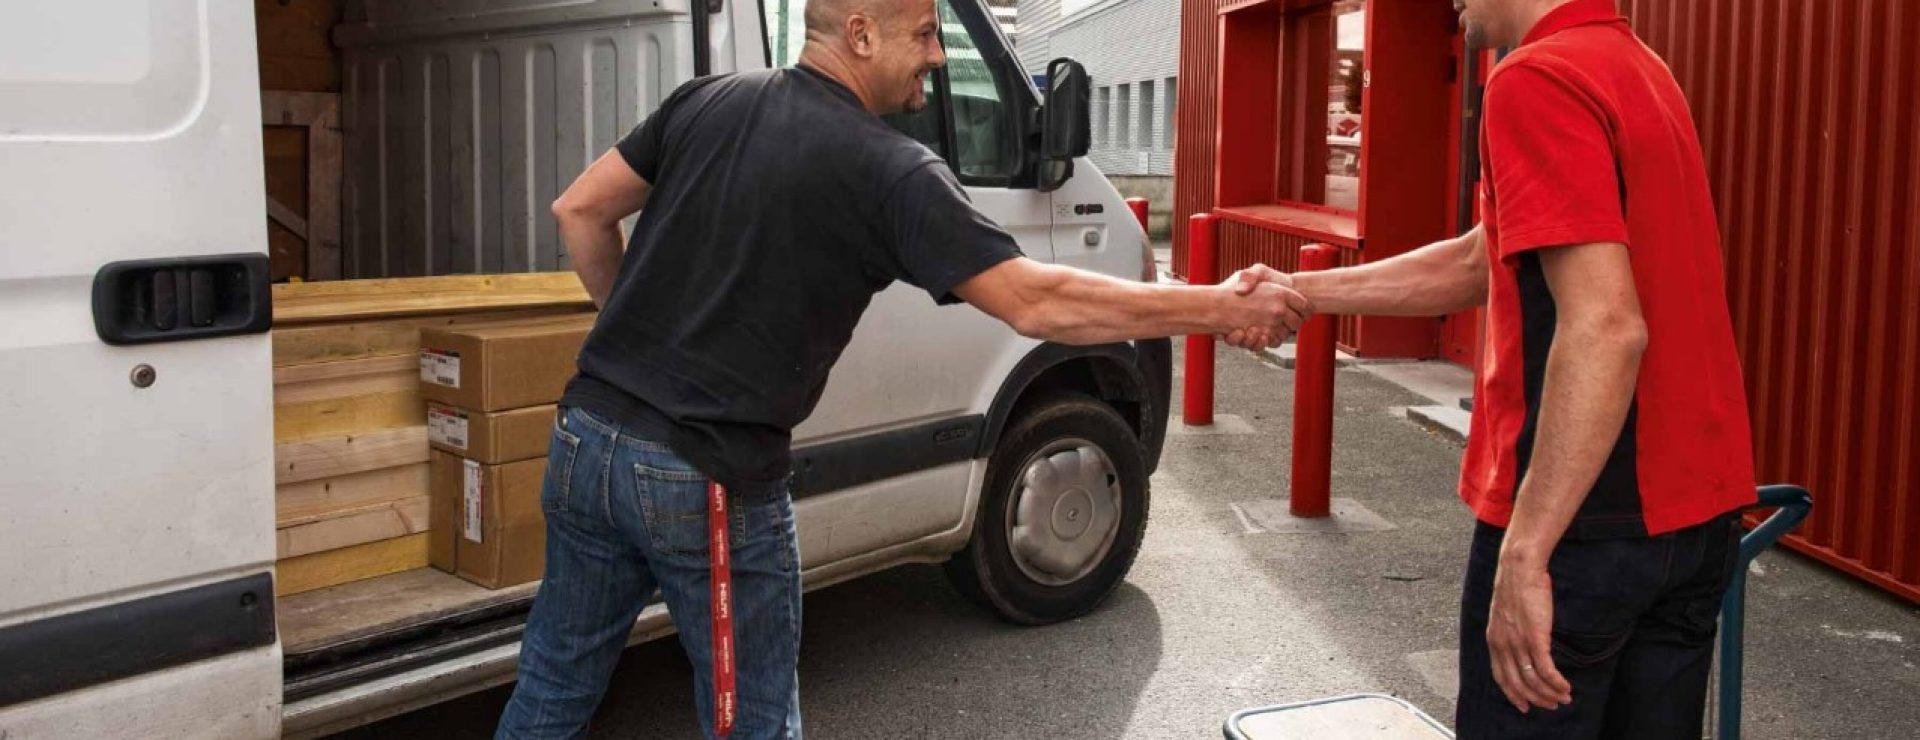 Un client et un employé Hilti se serrent la main devant une camionnette